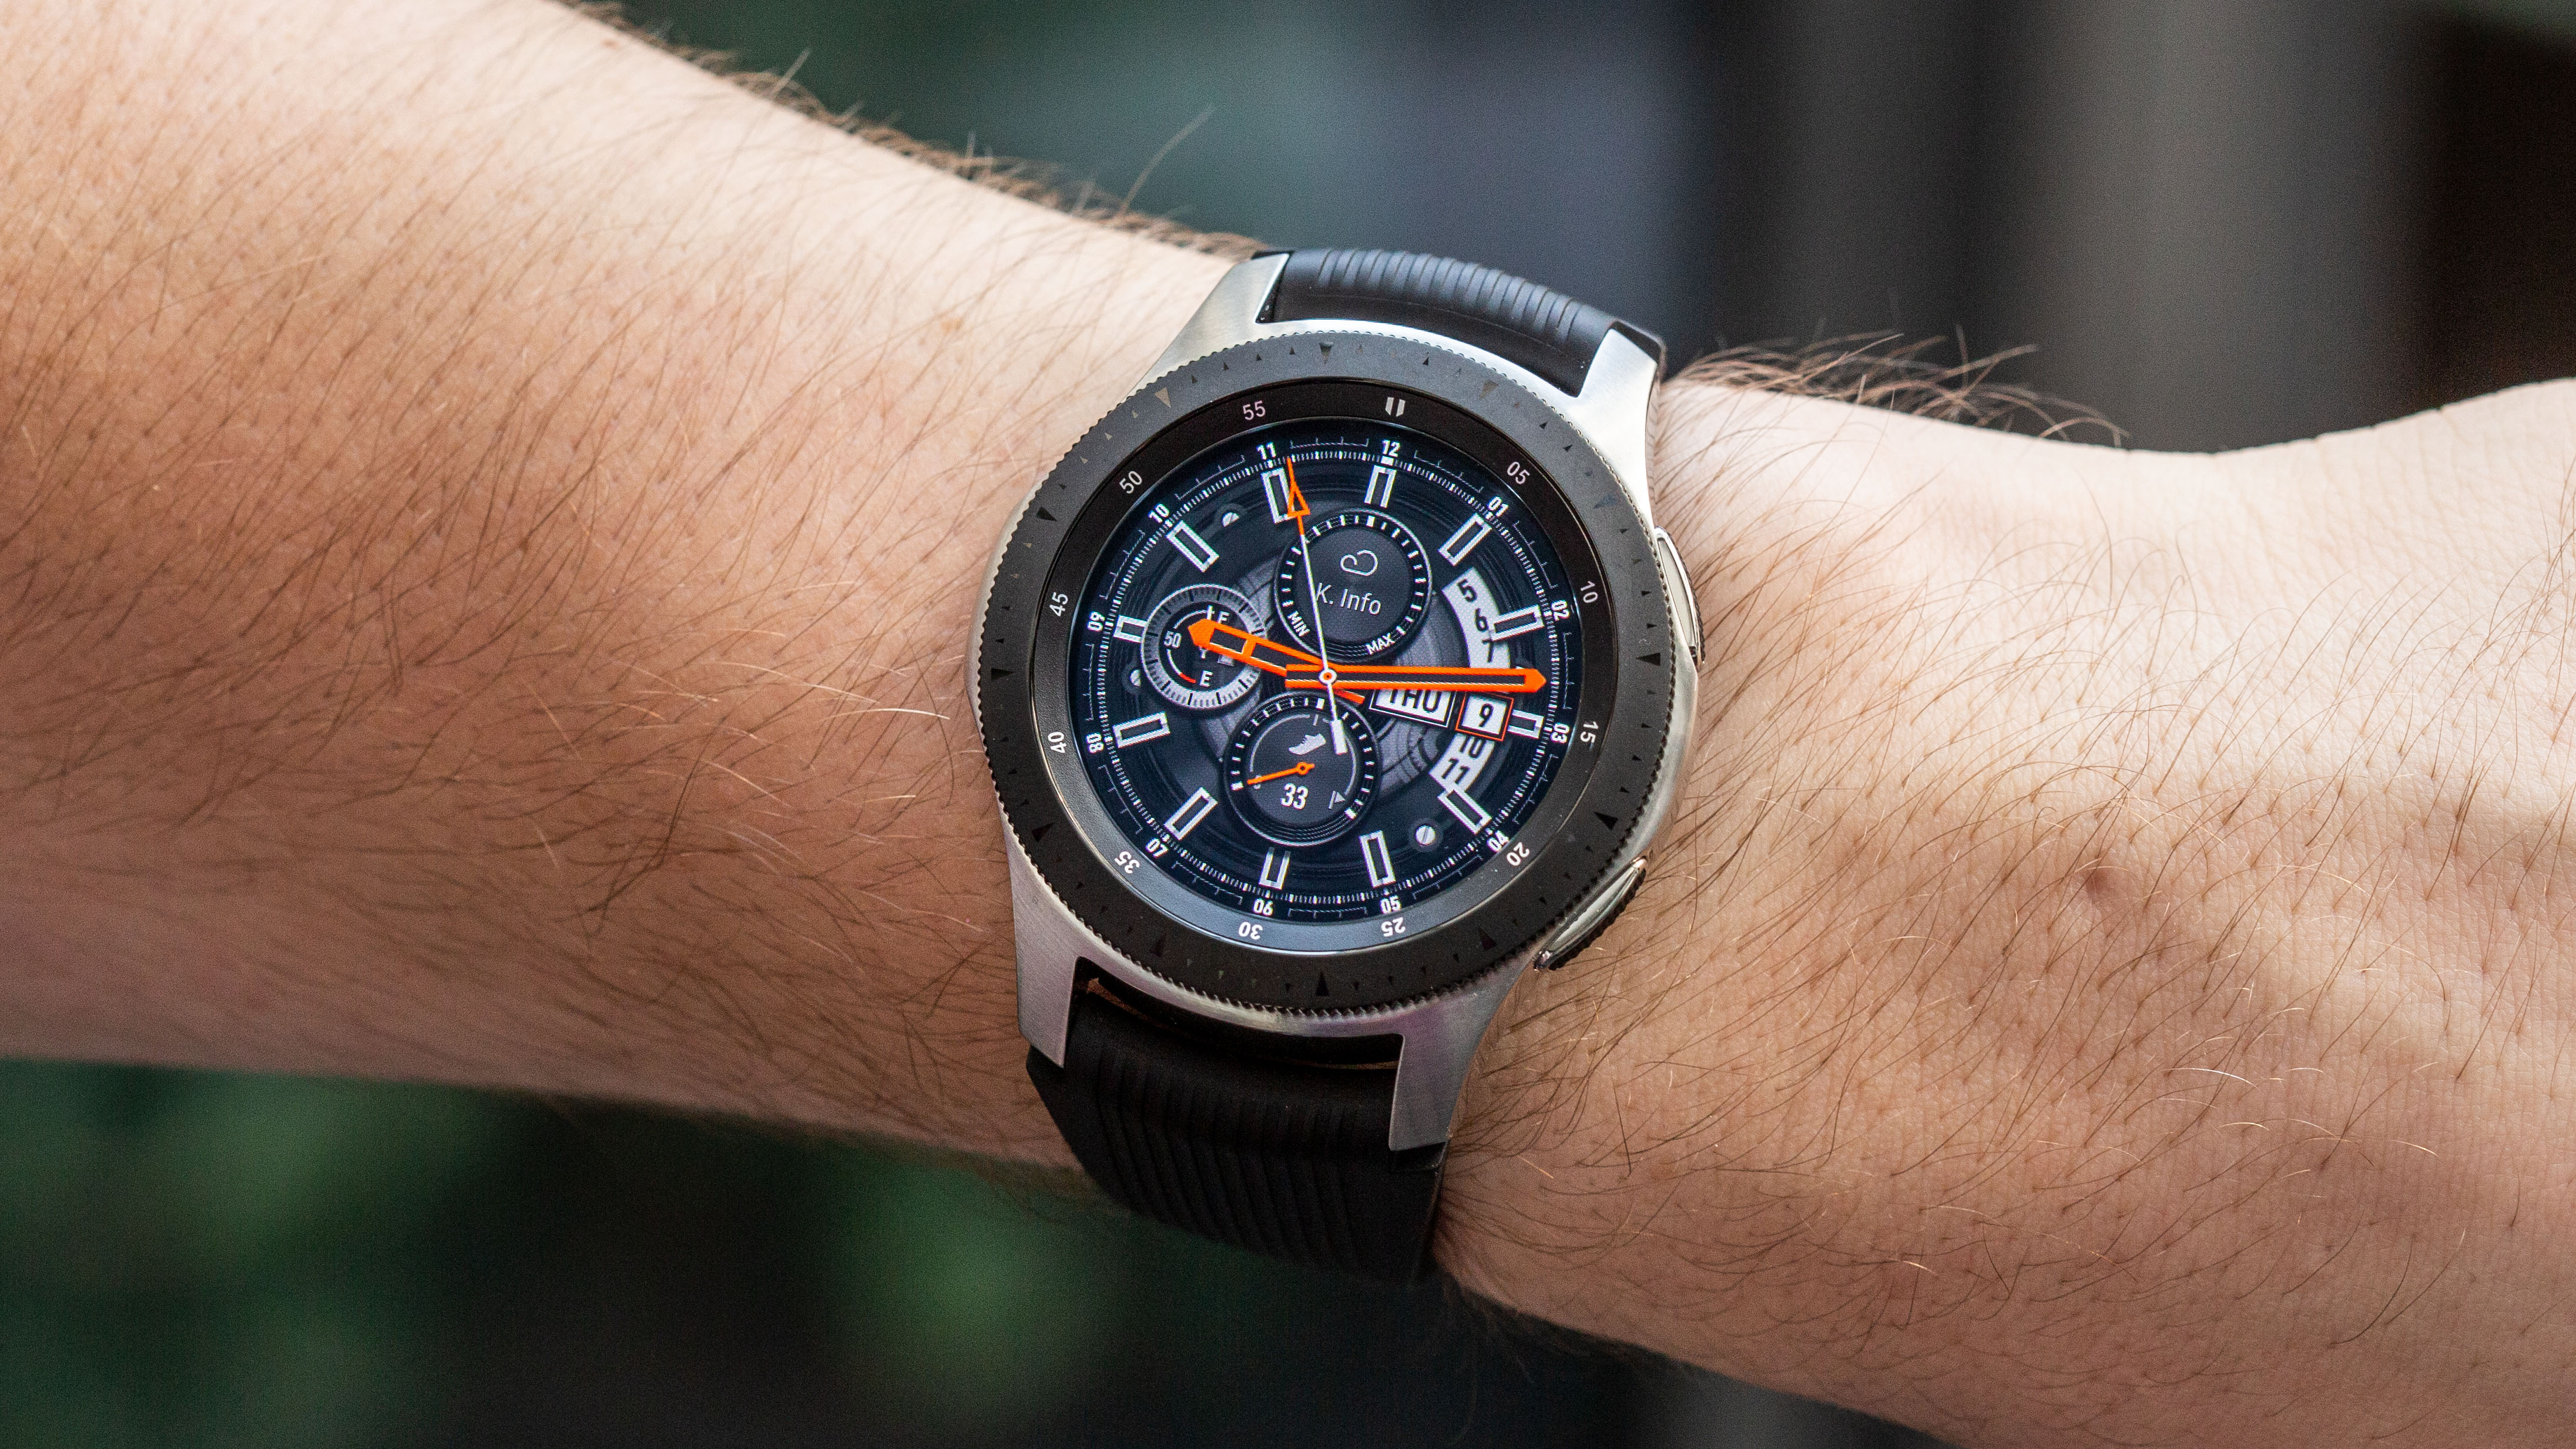 Samsung Galaxy Watch: the premier Android smartwatch? | NextPit